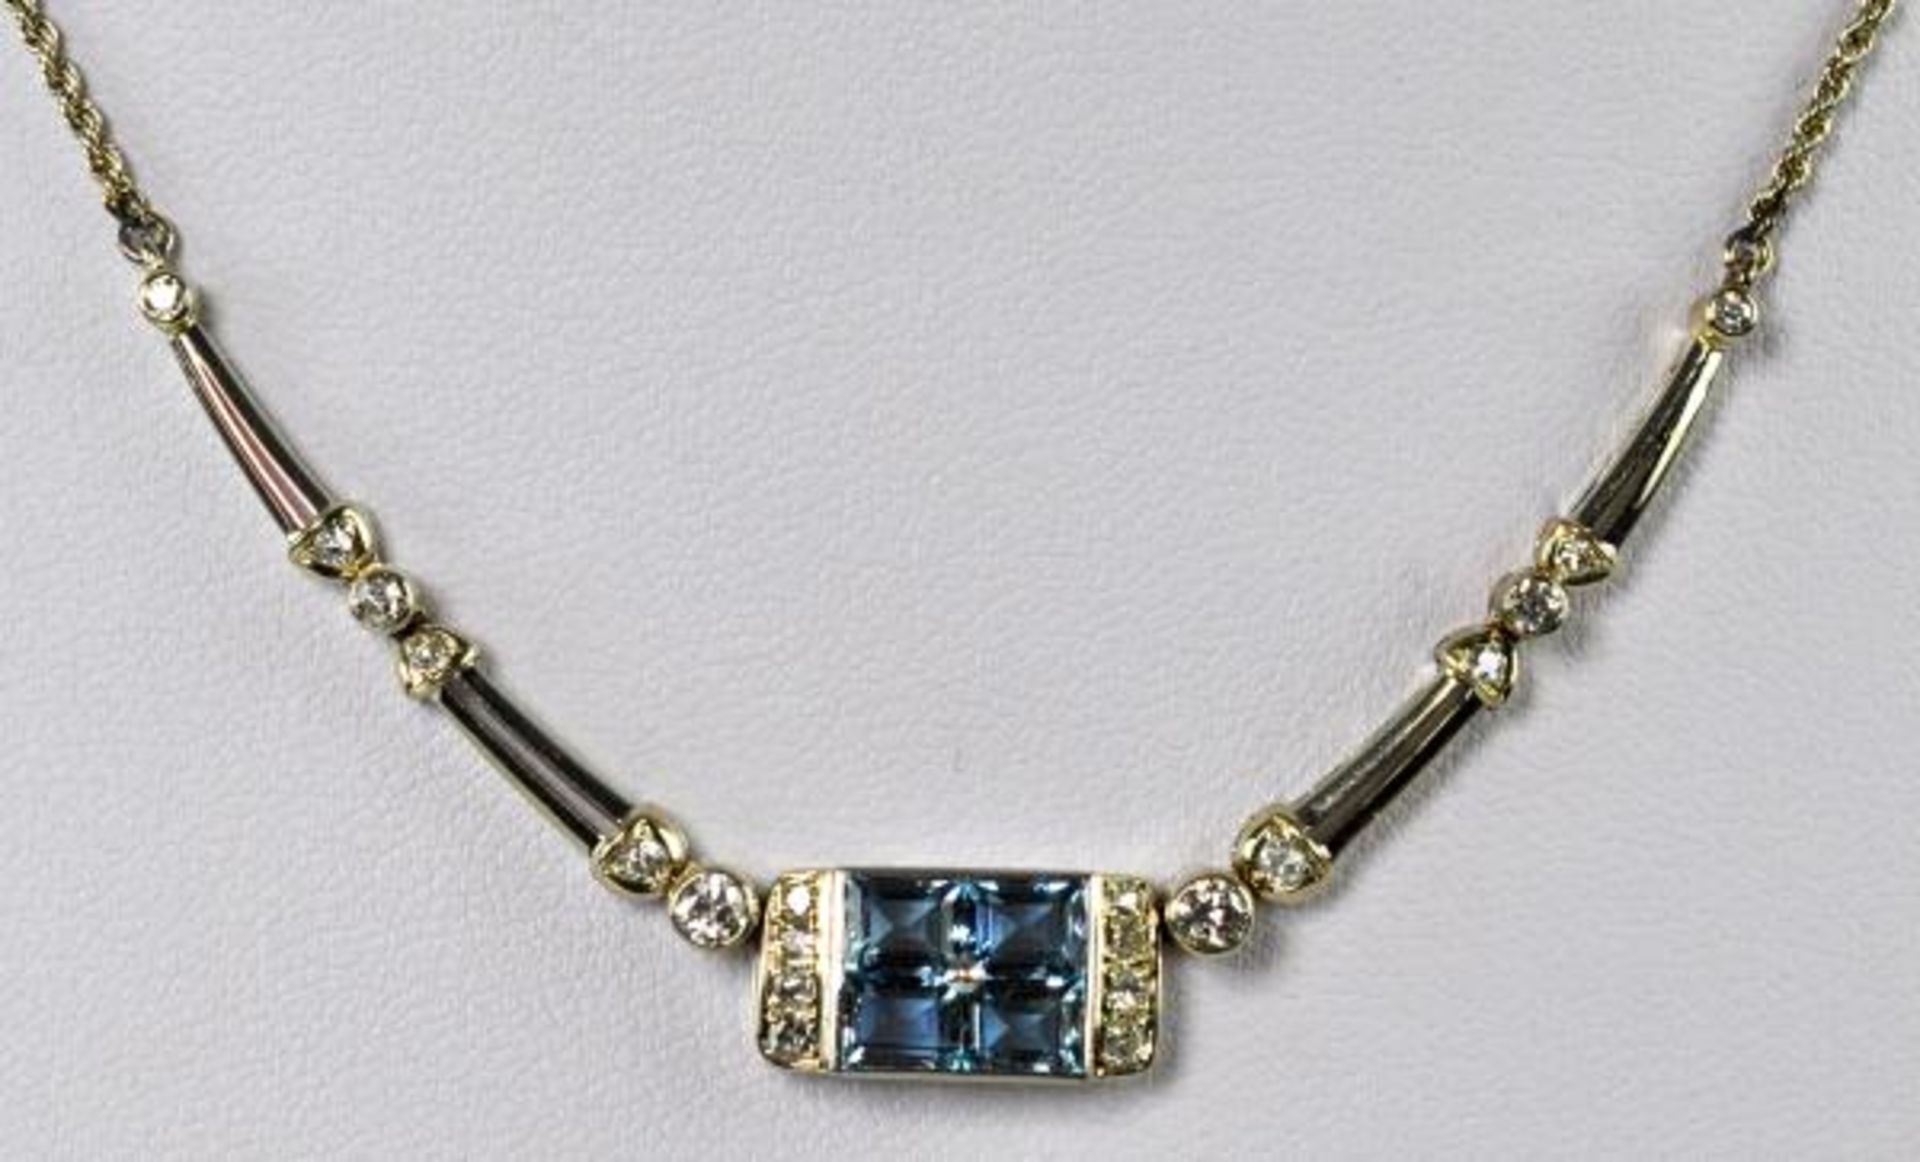 COLLIER rechteckiges Schauteil mit 4 Blautopas-Vierecken und 6 Diamanten besetzt, seitlich kleine